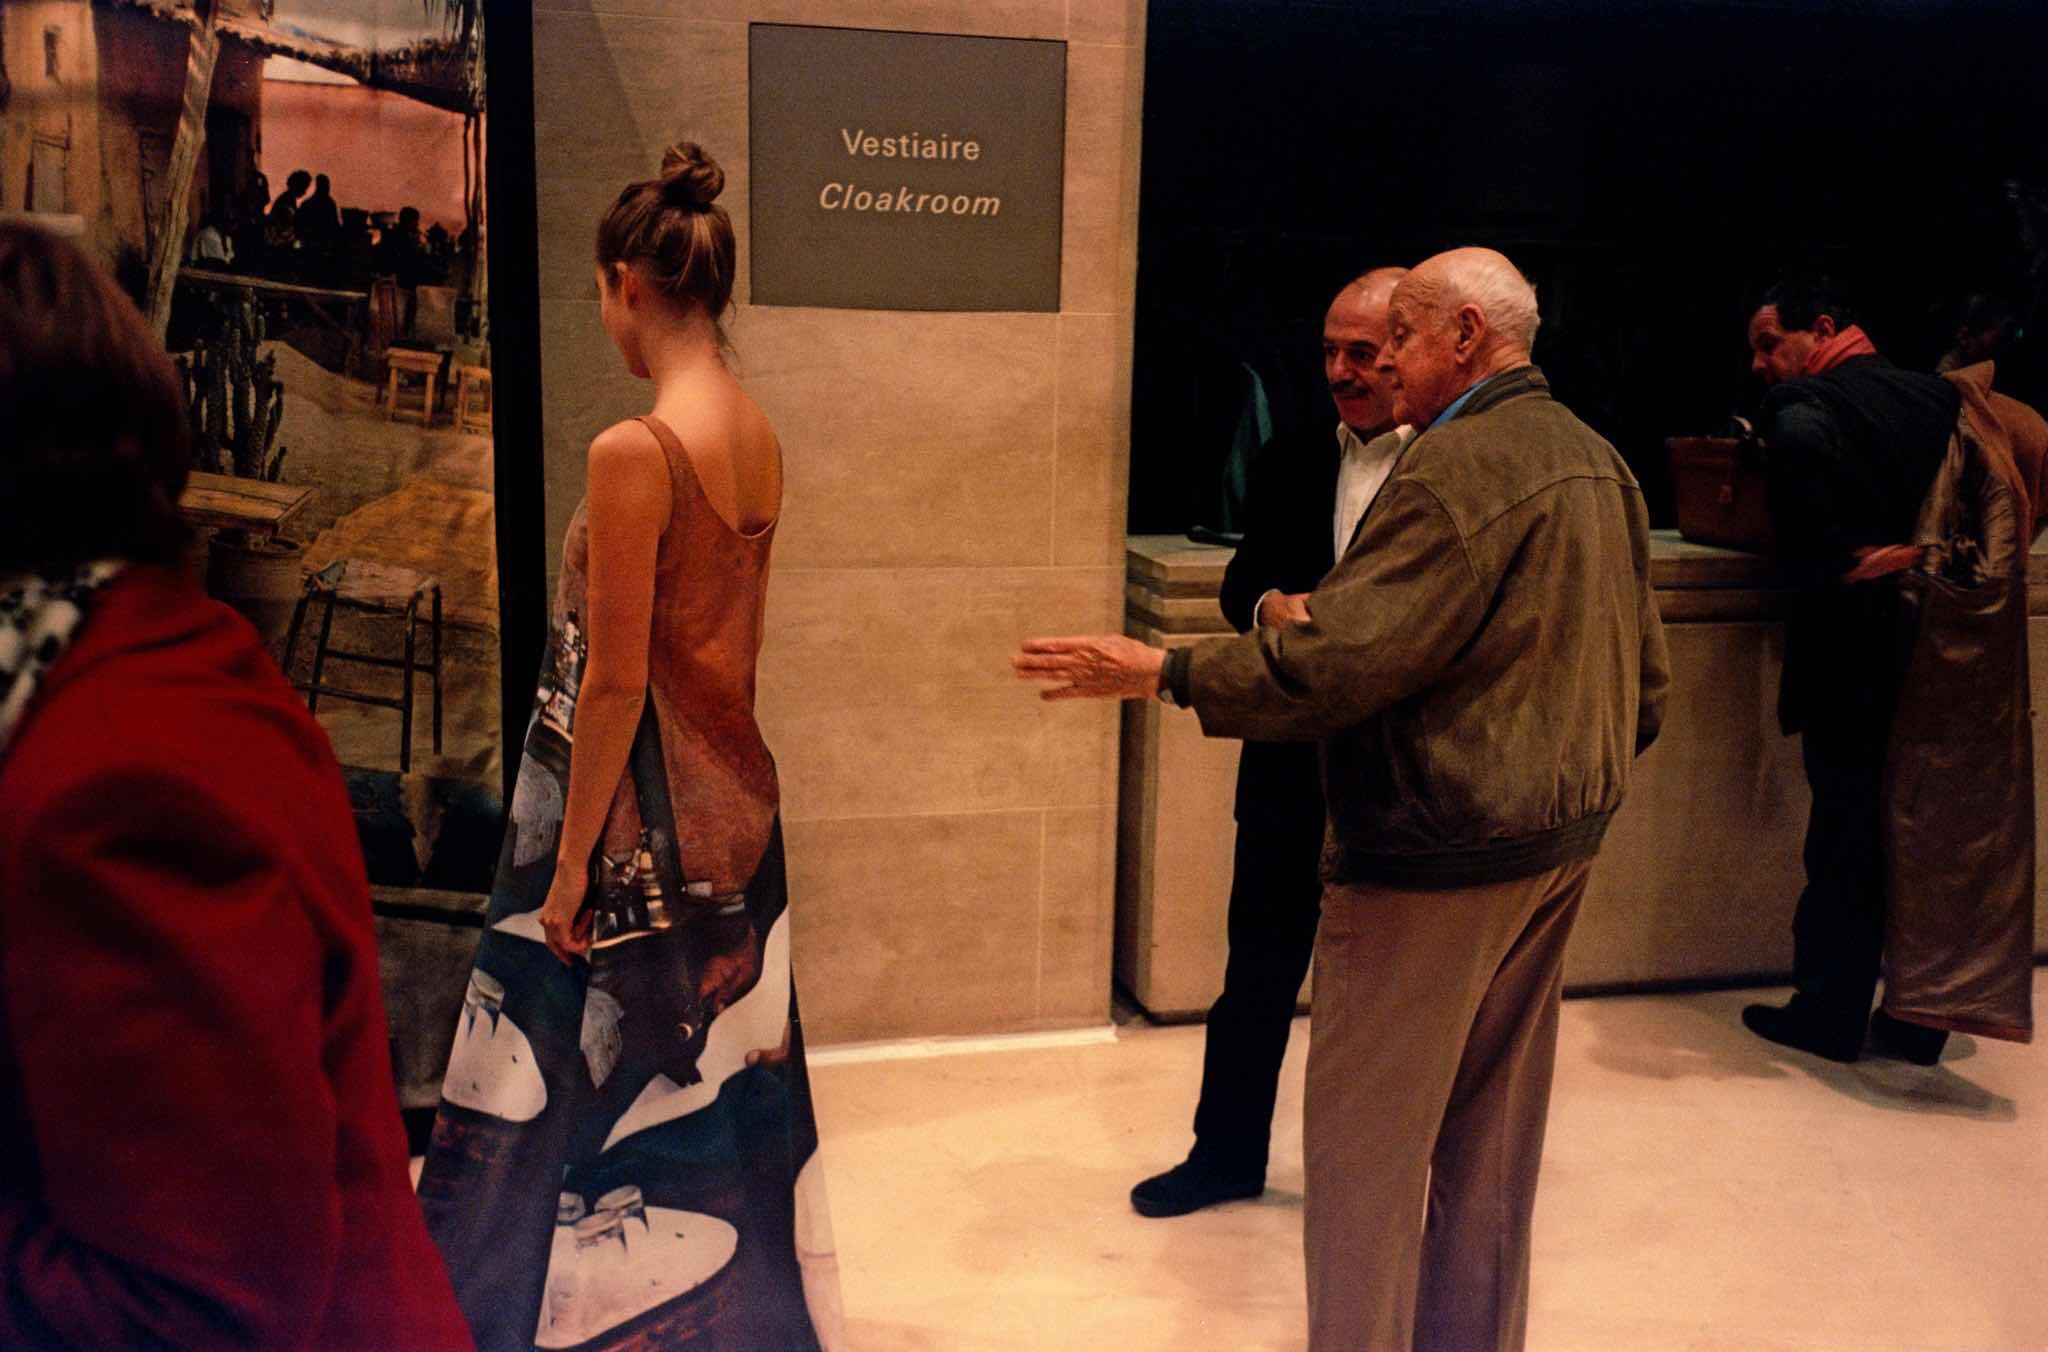 Проект Ежедневный отчет, Париж, Анри Картье-Брессон со своим биографом Пьером Ассулином, ноябрь, 1999 год. Фотограф Франк Хорват